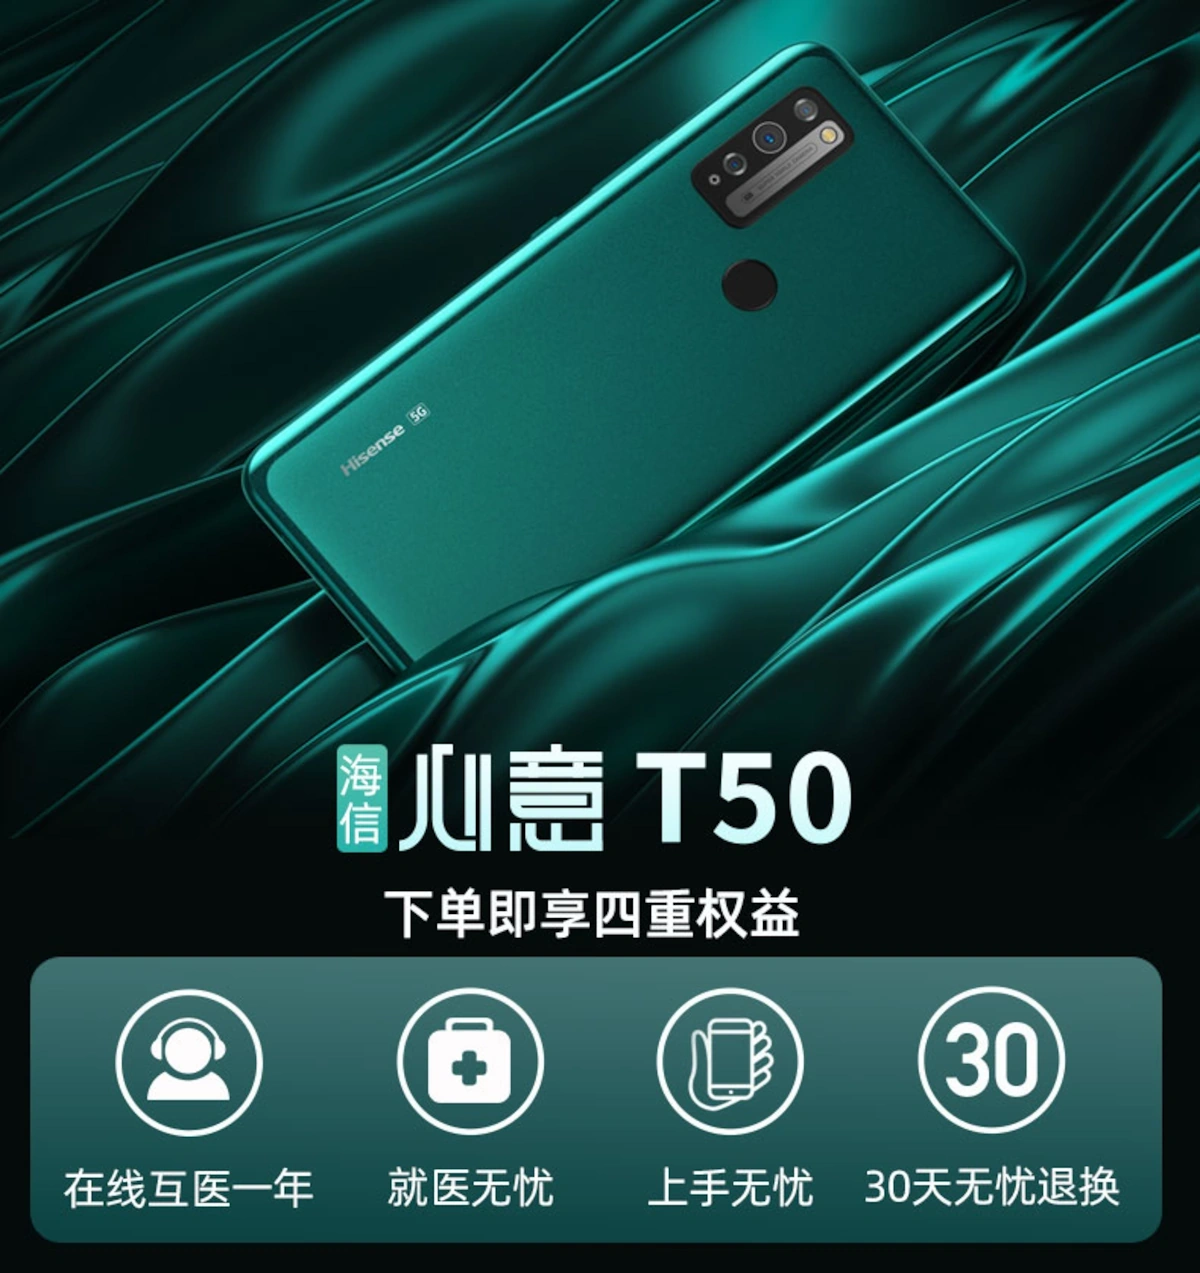 Hisense T50 5G